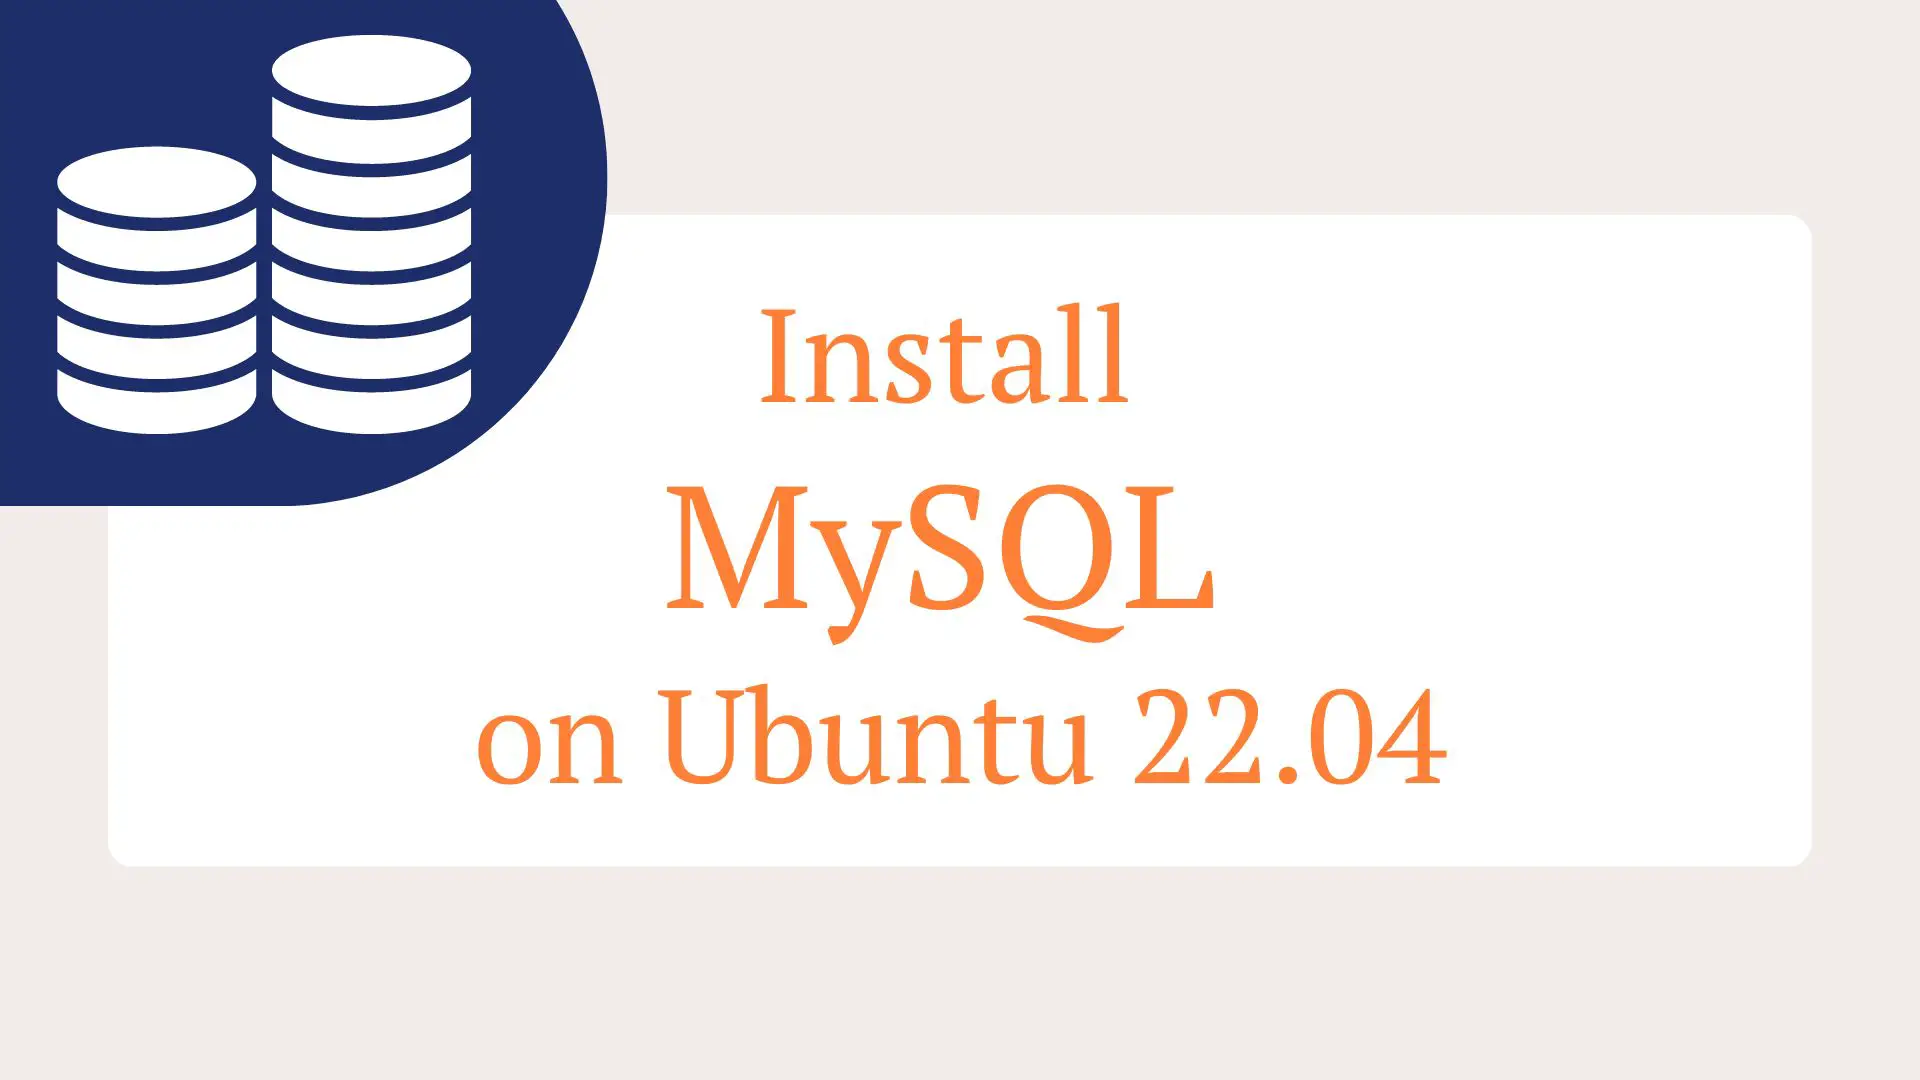 Install MySQL on Ubuntu 22.04